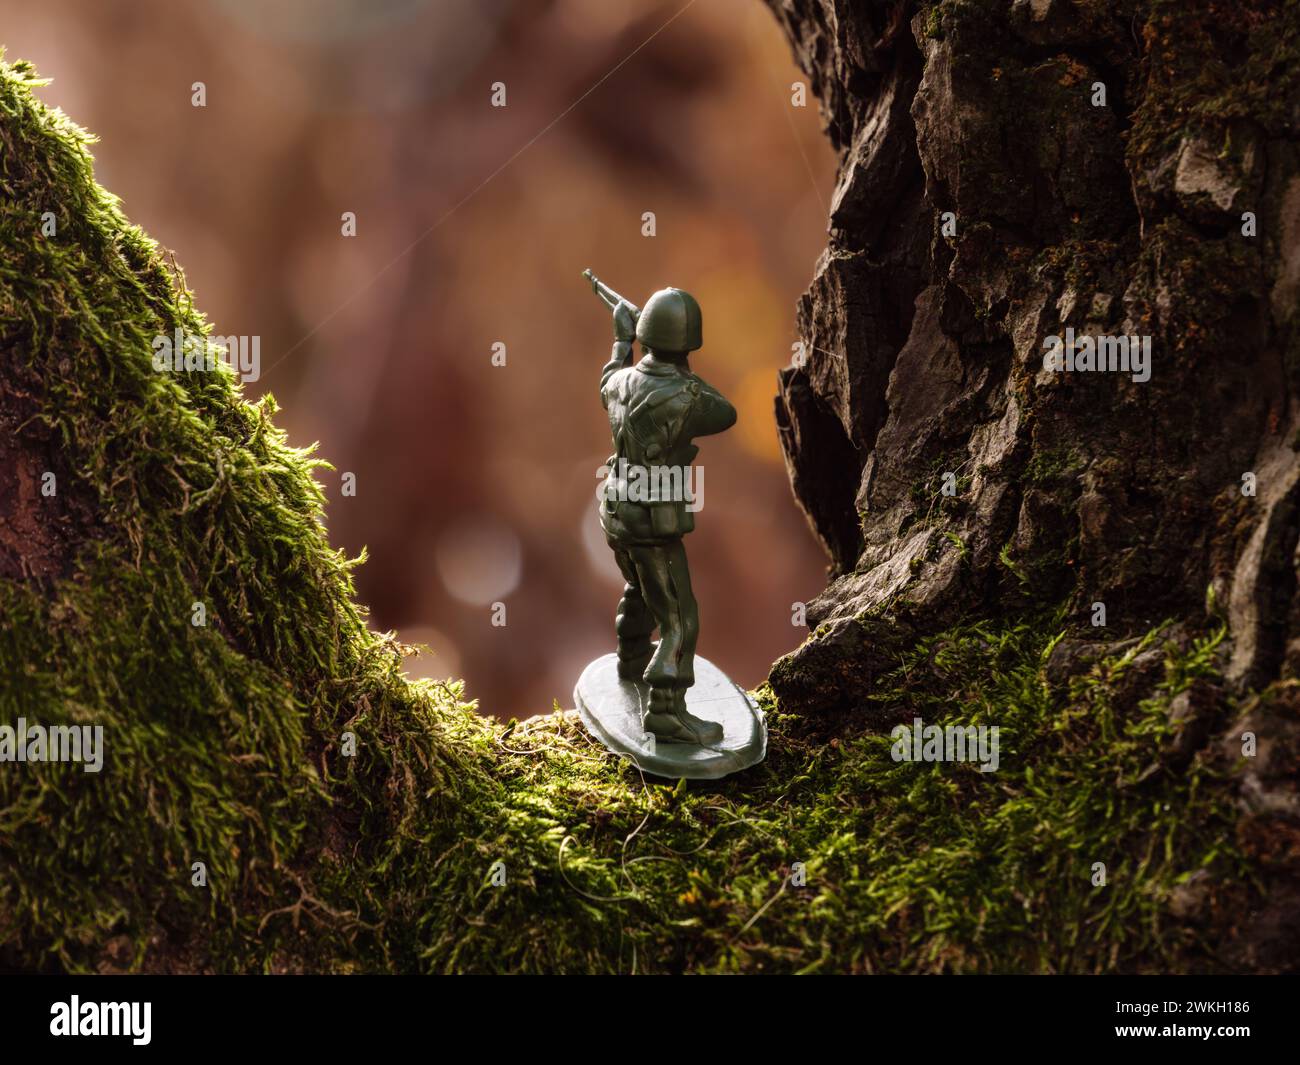 Un soldat jouet se tient sur une branche d'arbre brun couverte de mousse verte en été. Banque D'Images